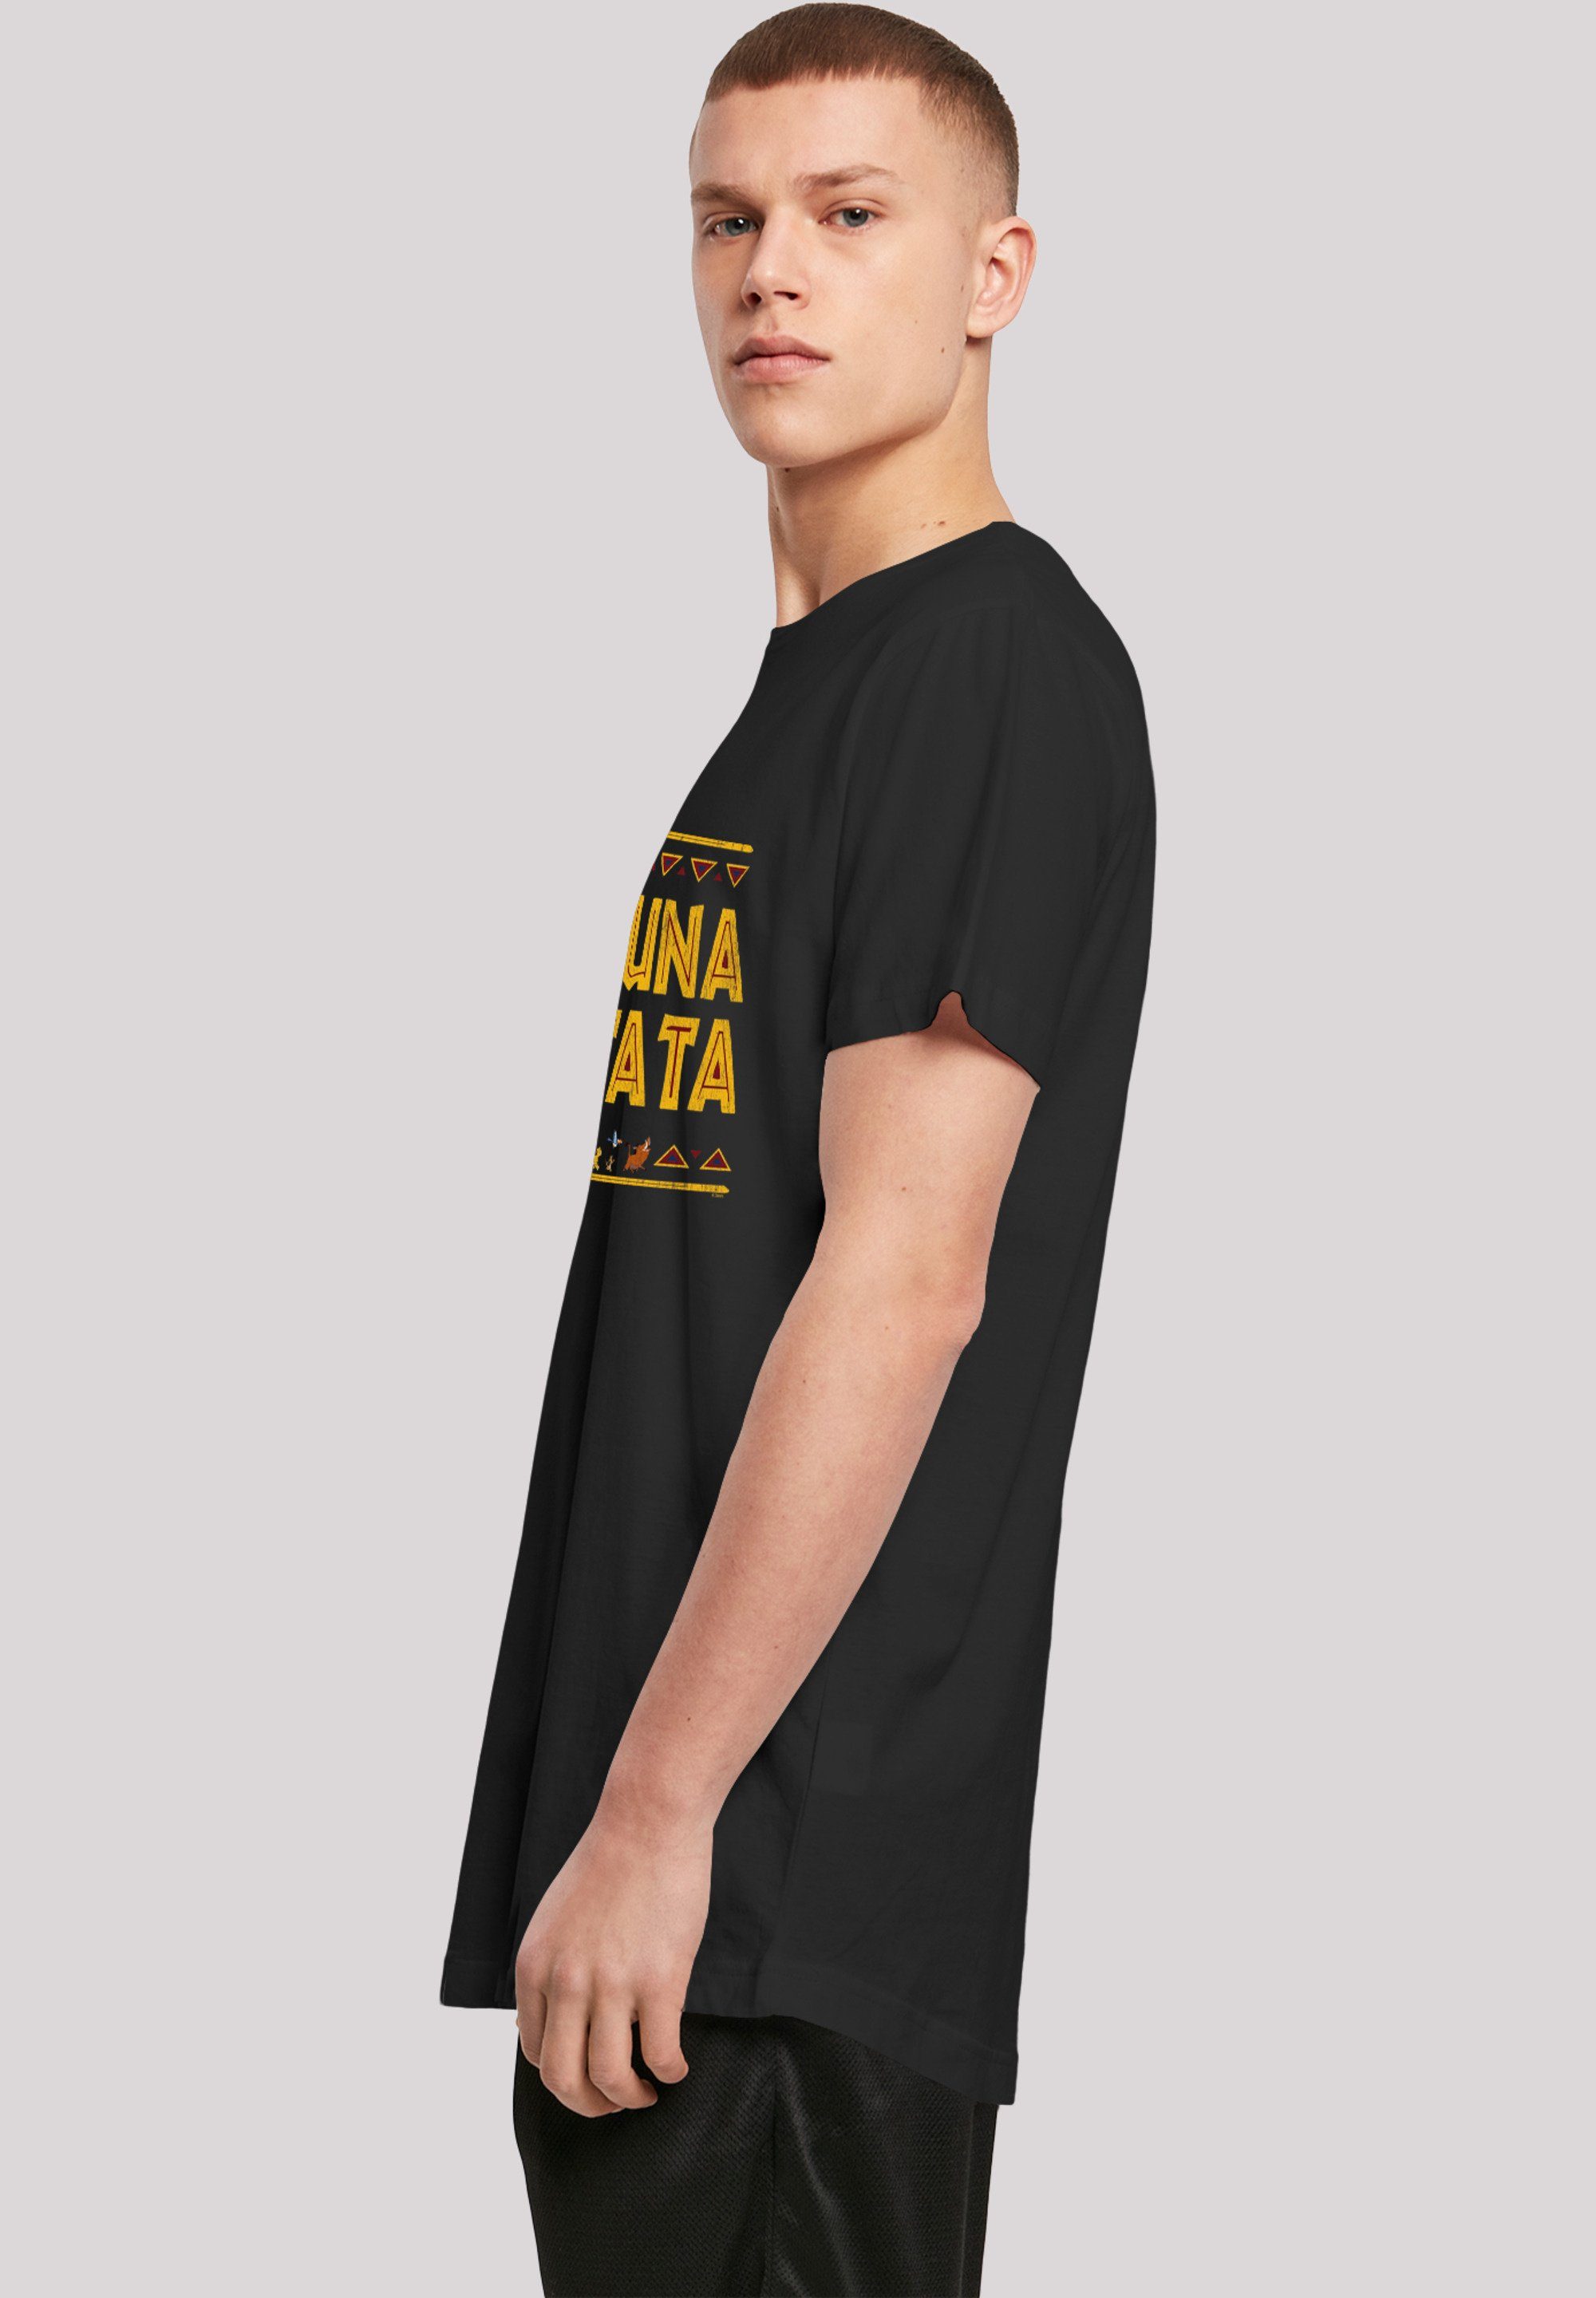 Matata' F4NT4STIC König schwarz Hakuna der T-Shirt Löwen Print